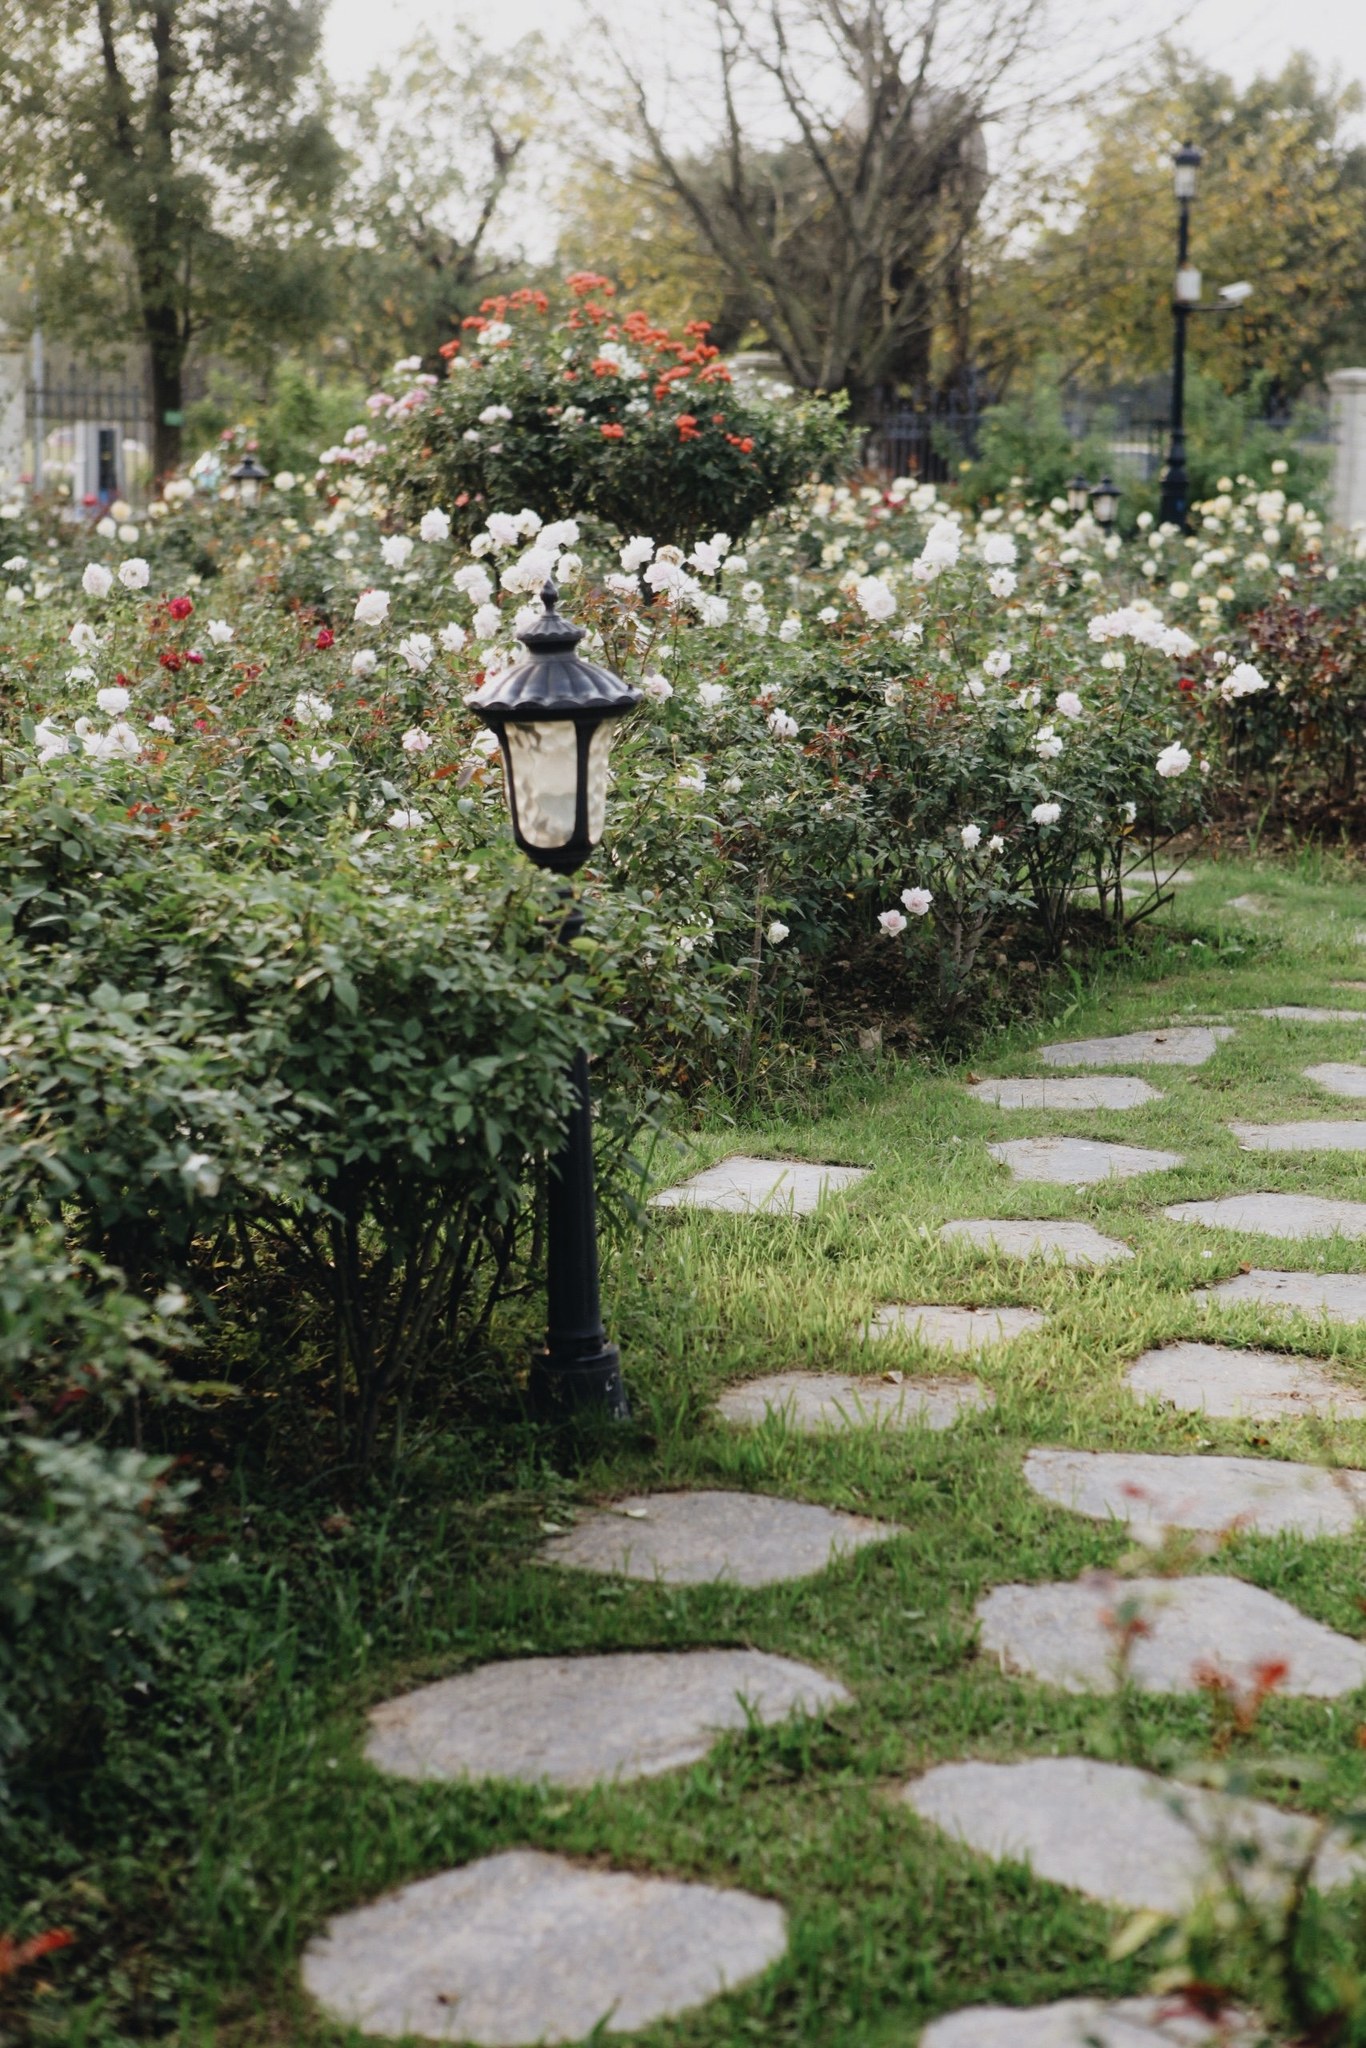 Trường đại học gây sốt với vườn hồng hàng trăm loại đẹp như cổ tích: Chỉ ngắm thôi cũng đã đầy cảm hứng học tập- Ảnh 8.